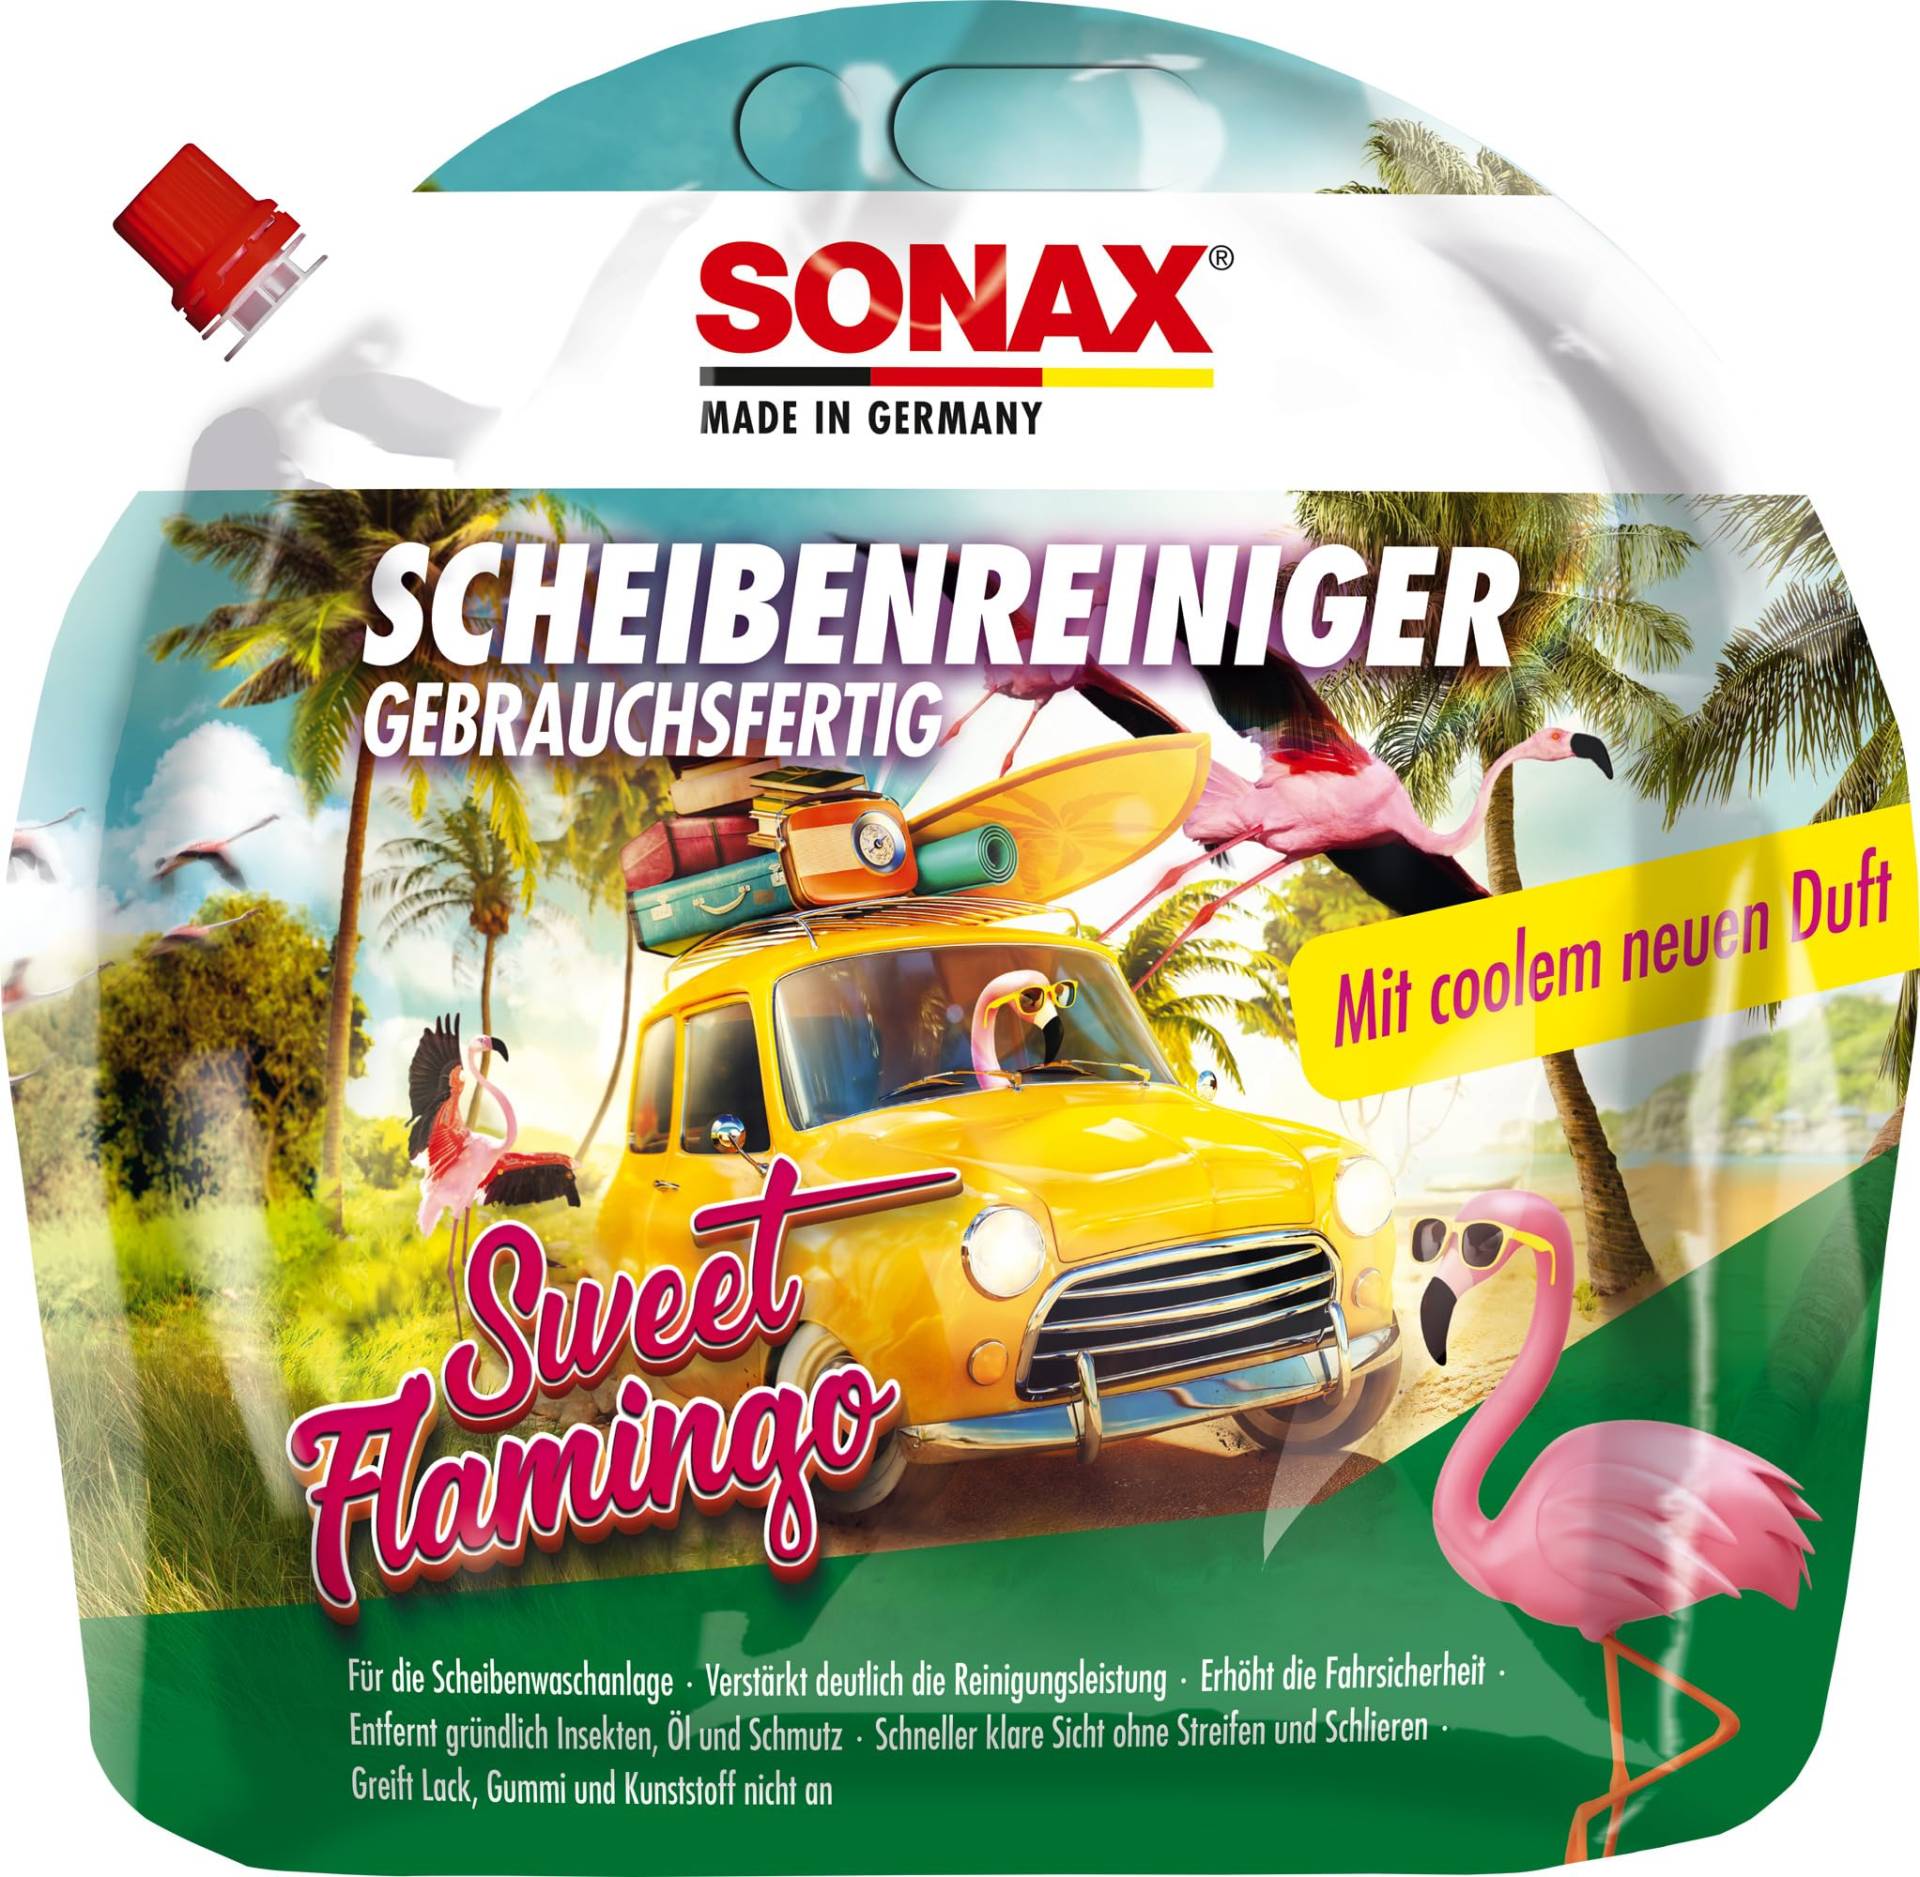 SONAX ScheibenReiniger gebrauchsfertig Sweet Flamingo (3 Liter) verstärkt die Reinigungsleistung und erhöht die Fahrsicherheit, Art-Nr. 03944410 von SONAX